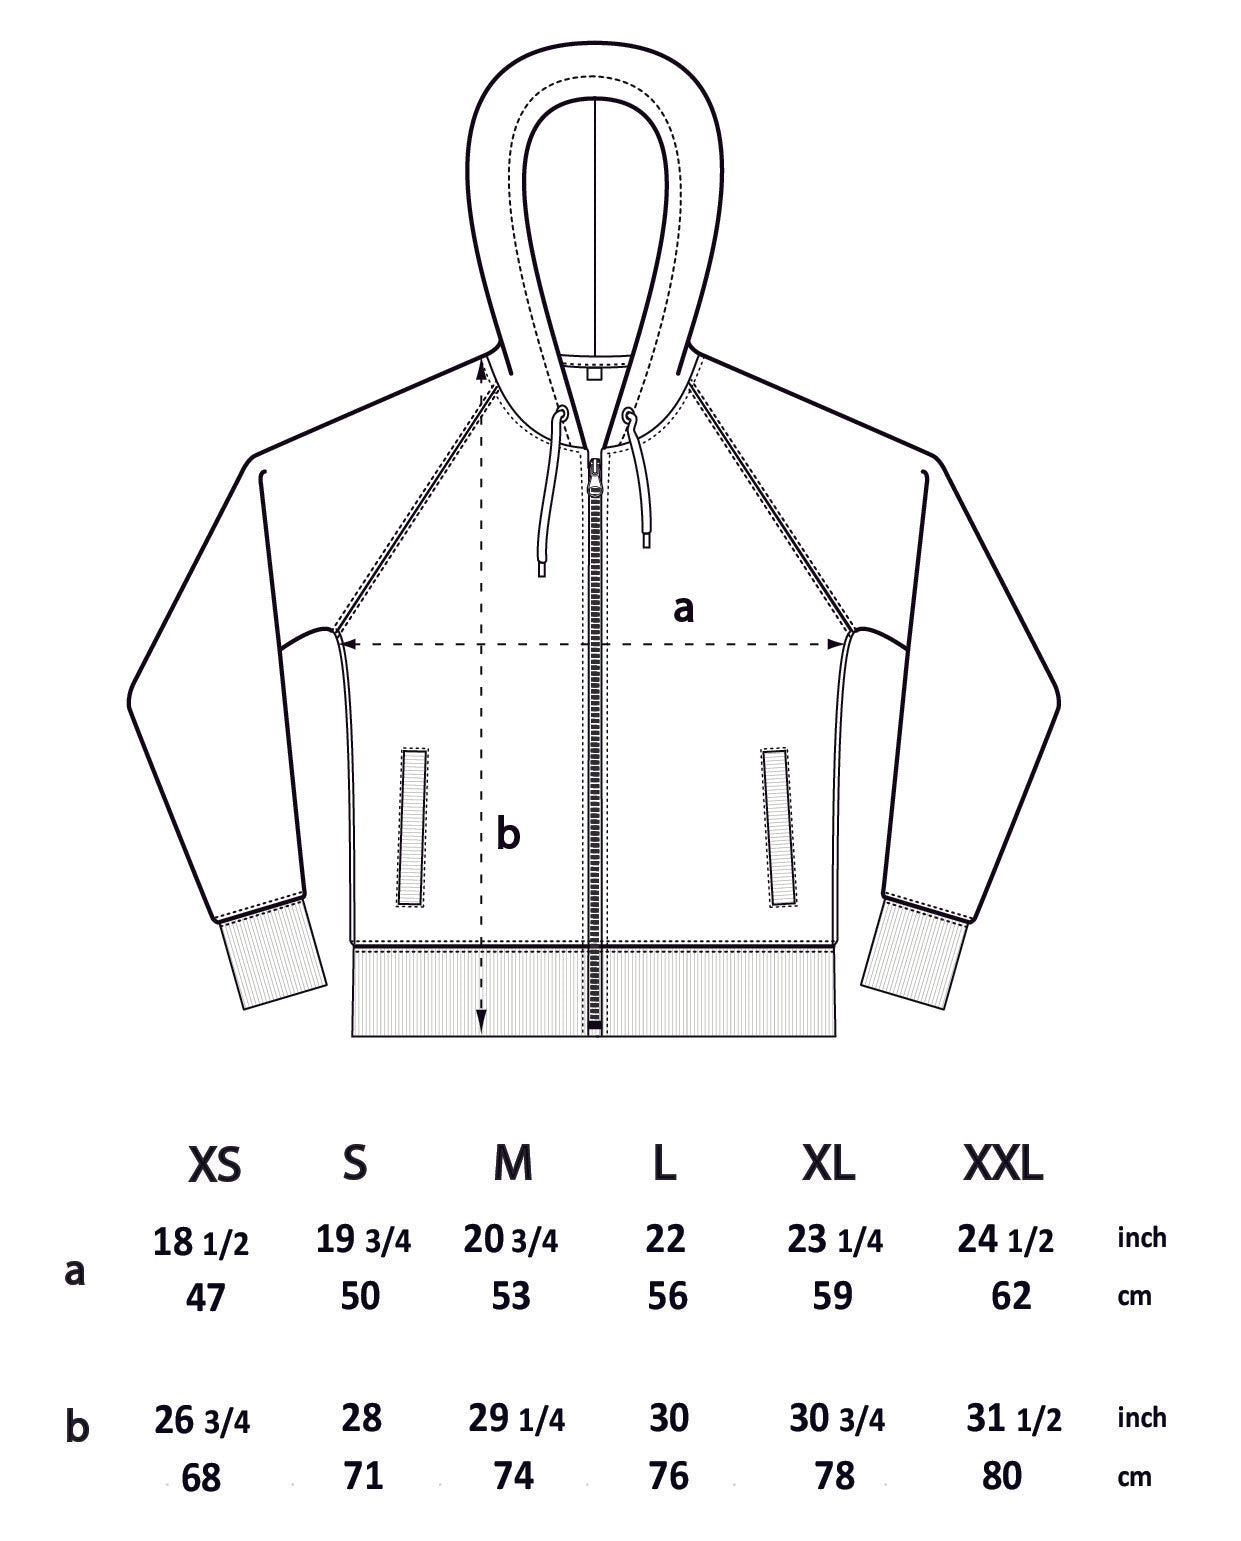 Organic heavyweight zip-up hoodie